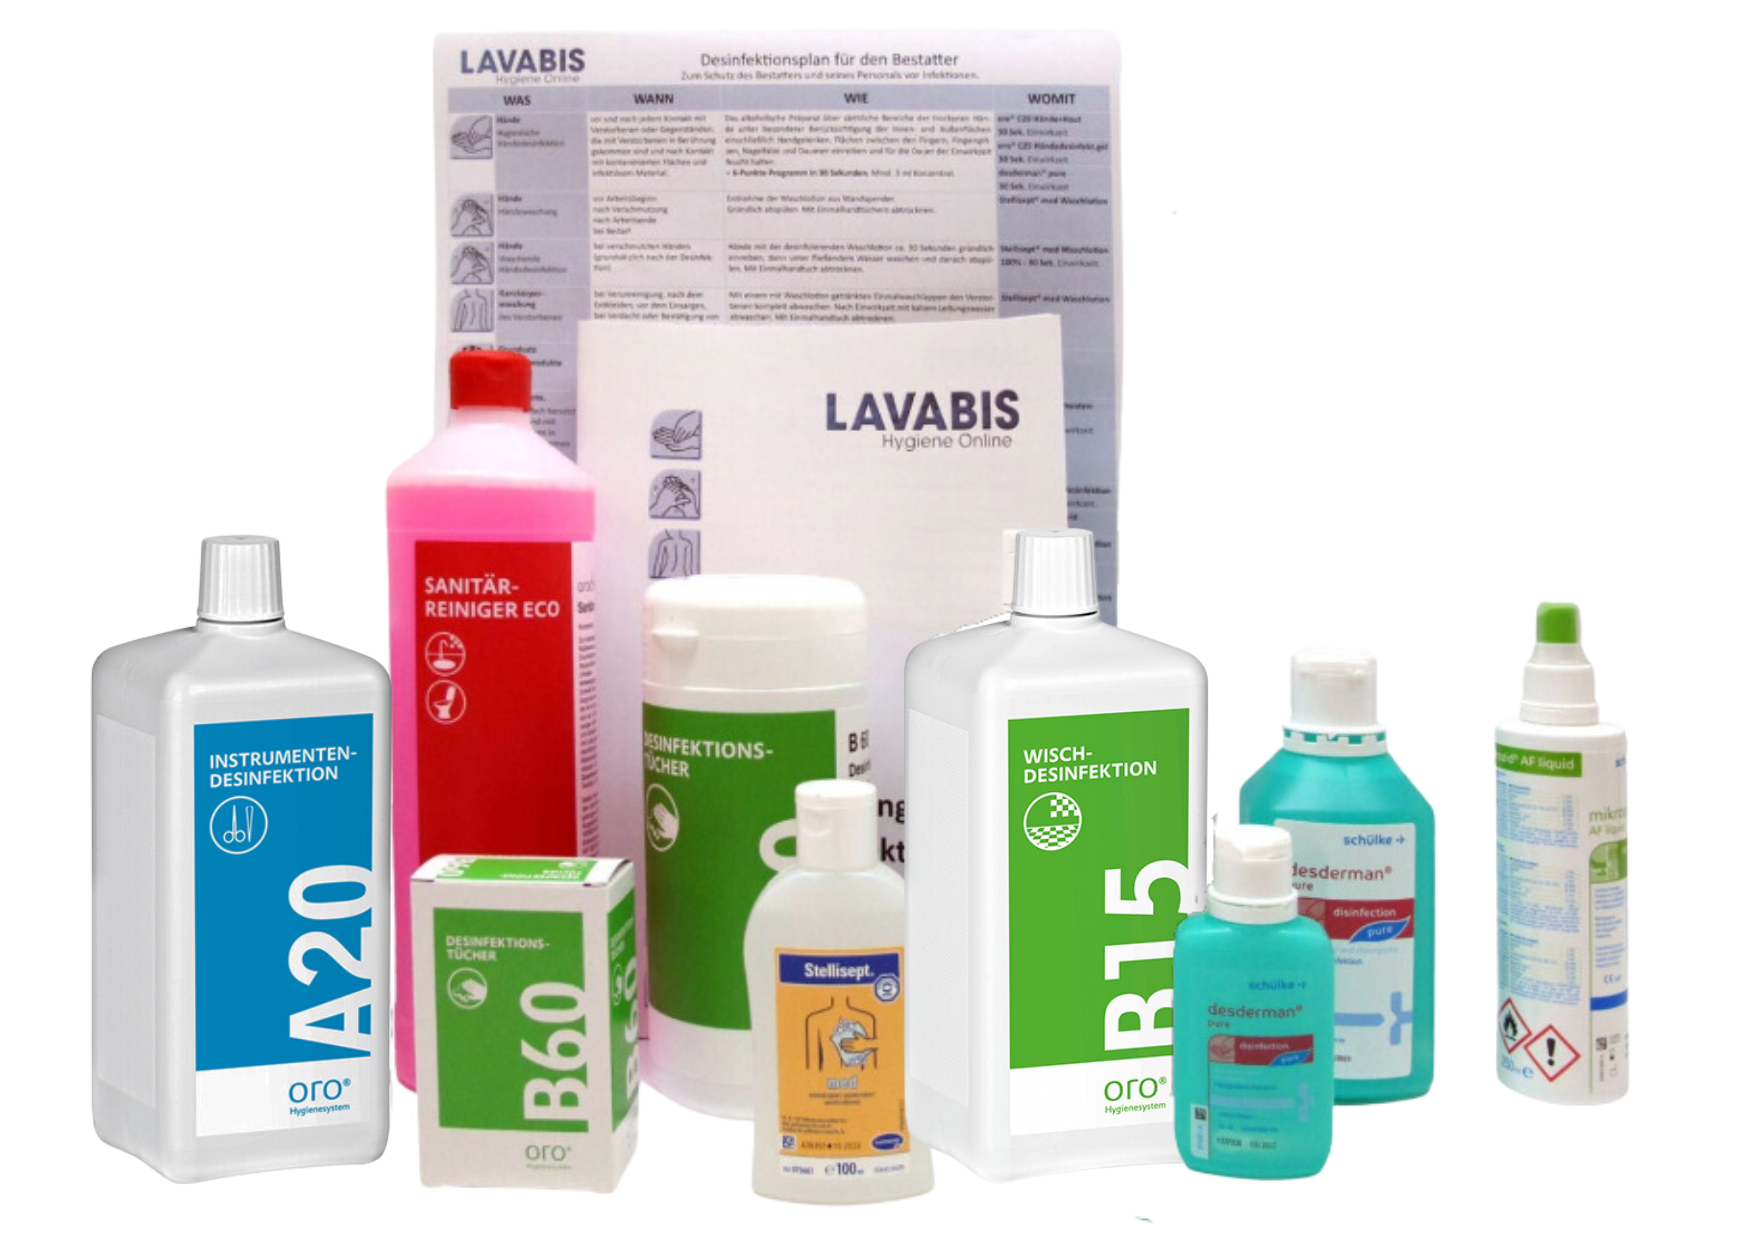 LAVABIS disinfection set